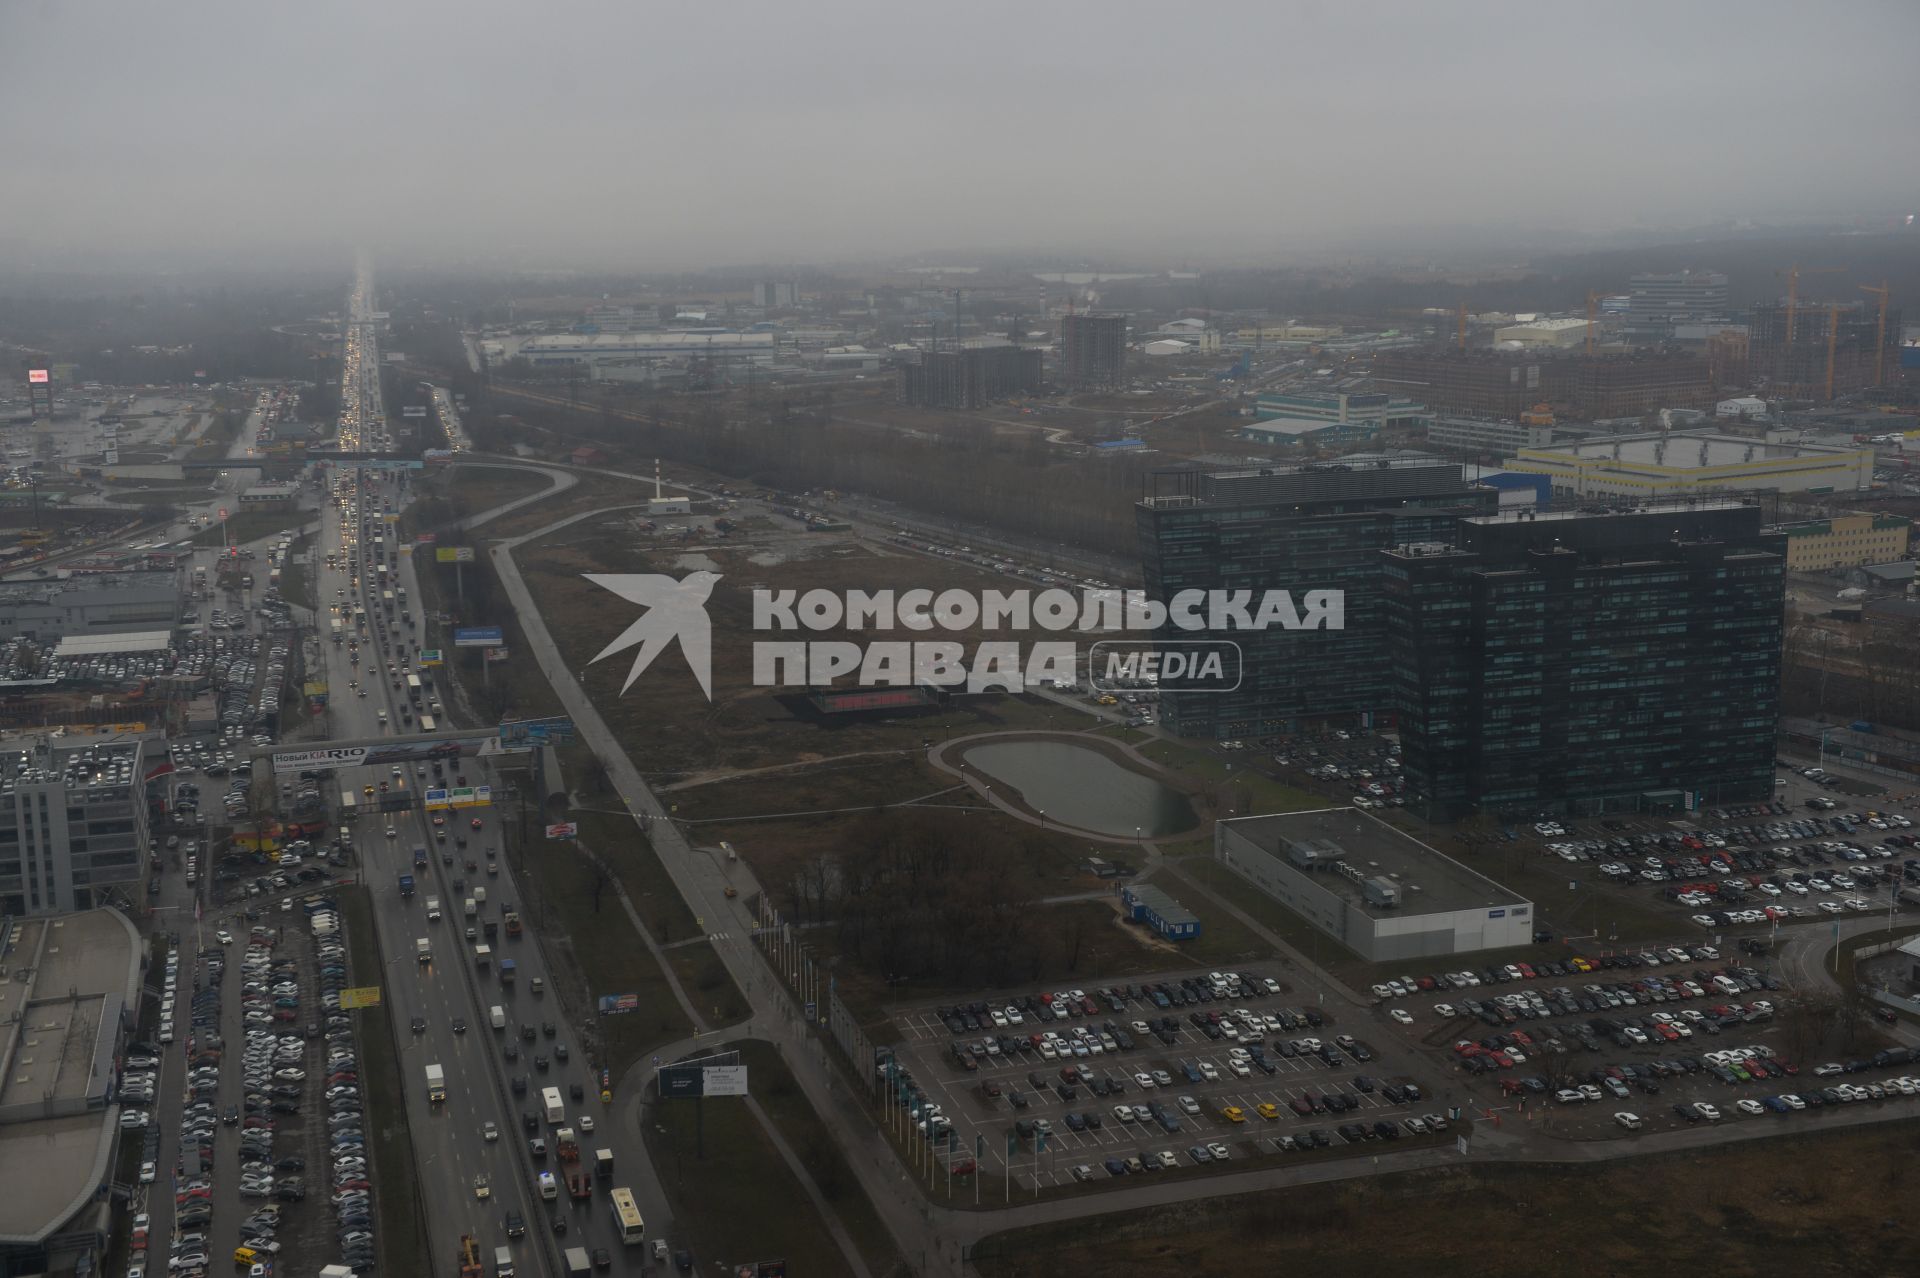 Вид на Ленинградское шоссе из кабины вертолета.